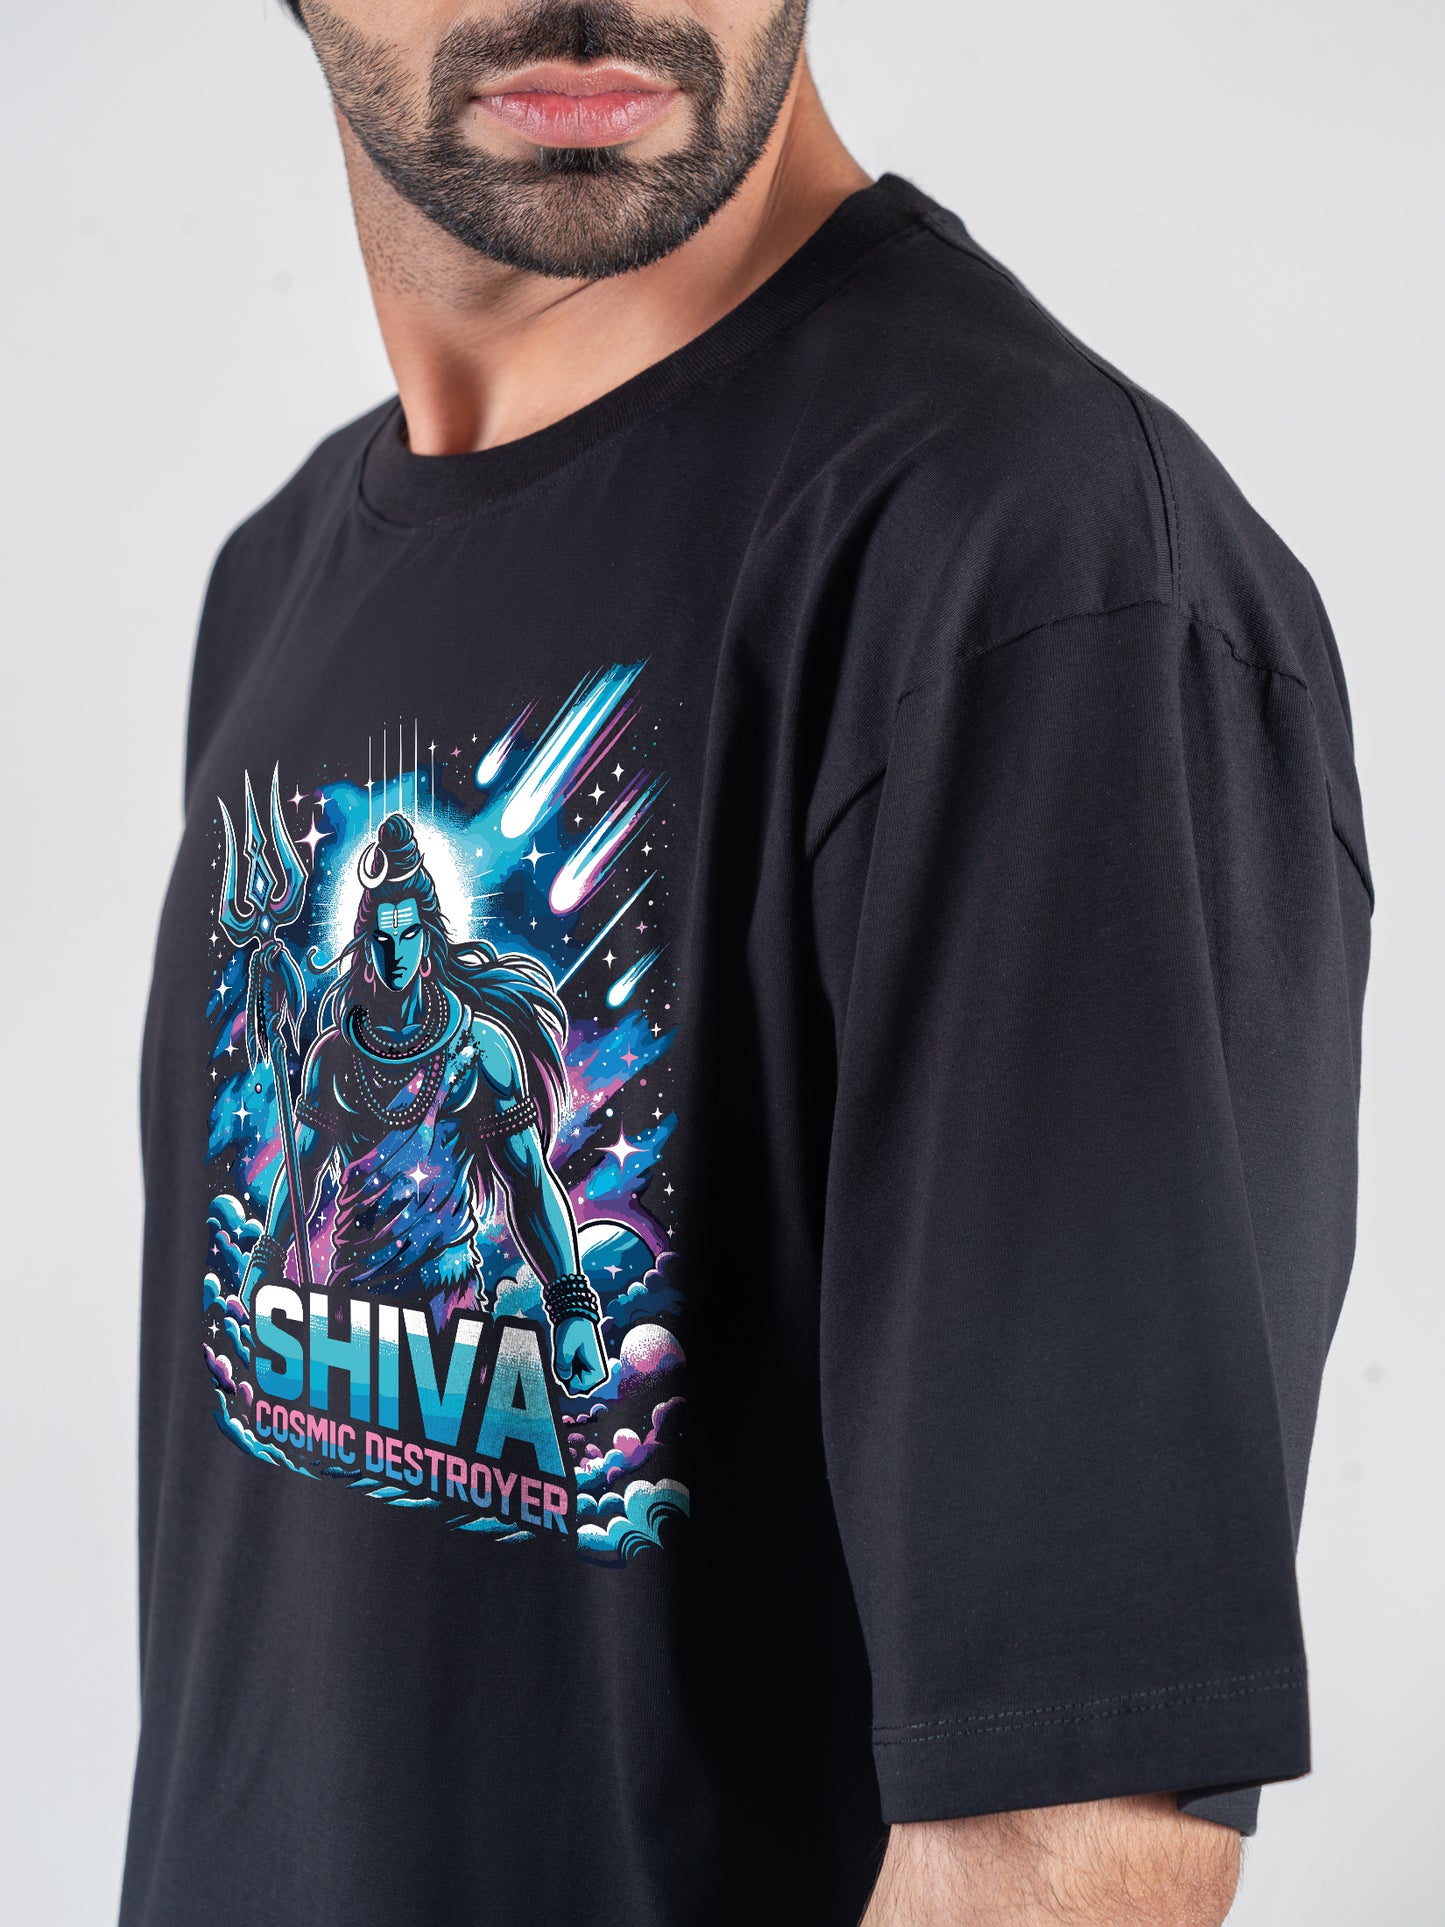 Shiva - Cosmic Destroyer Black DropShoulder T-Shirt